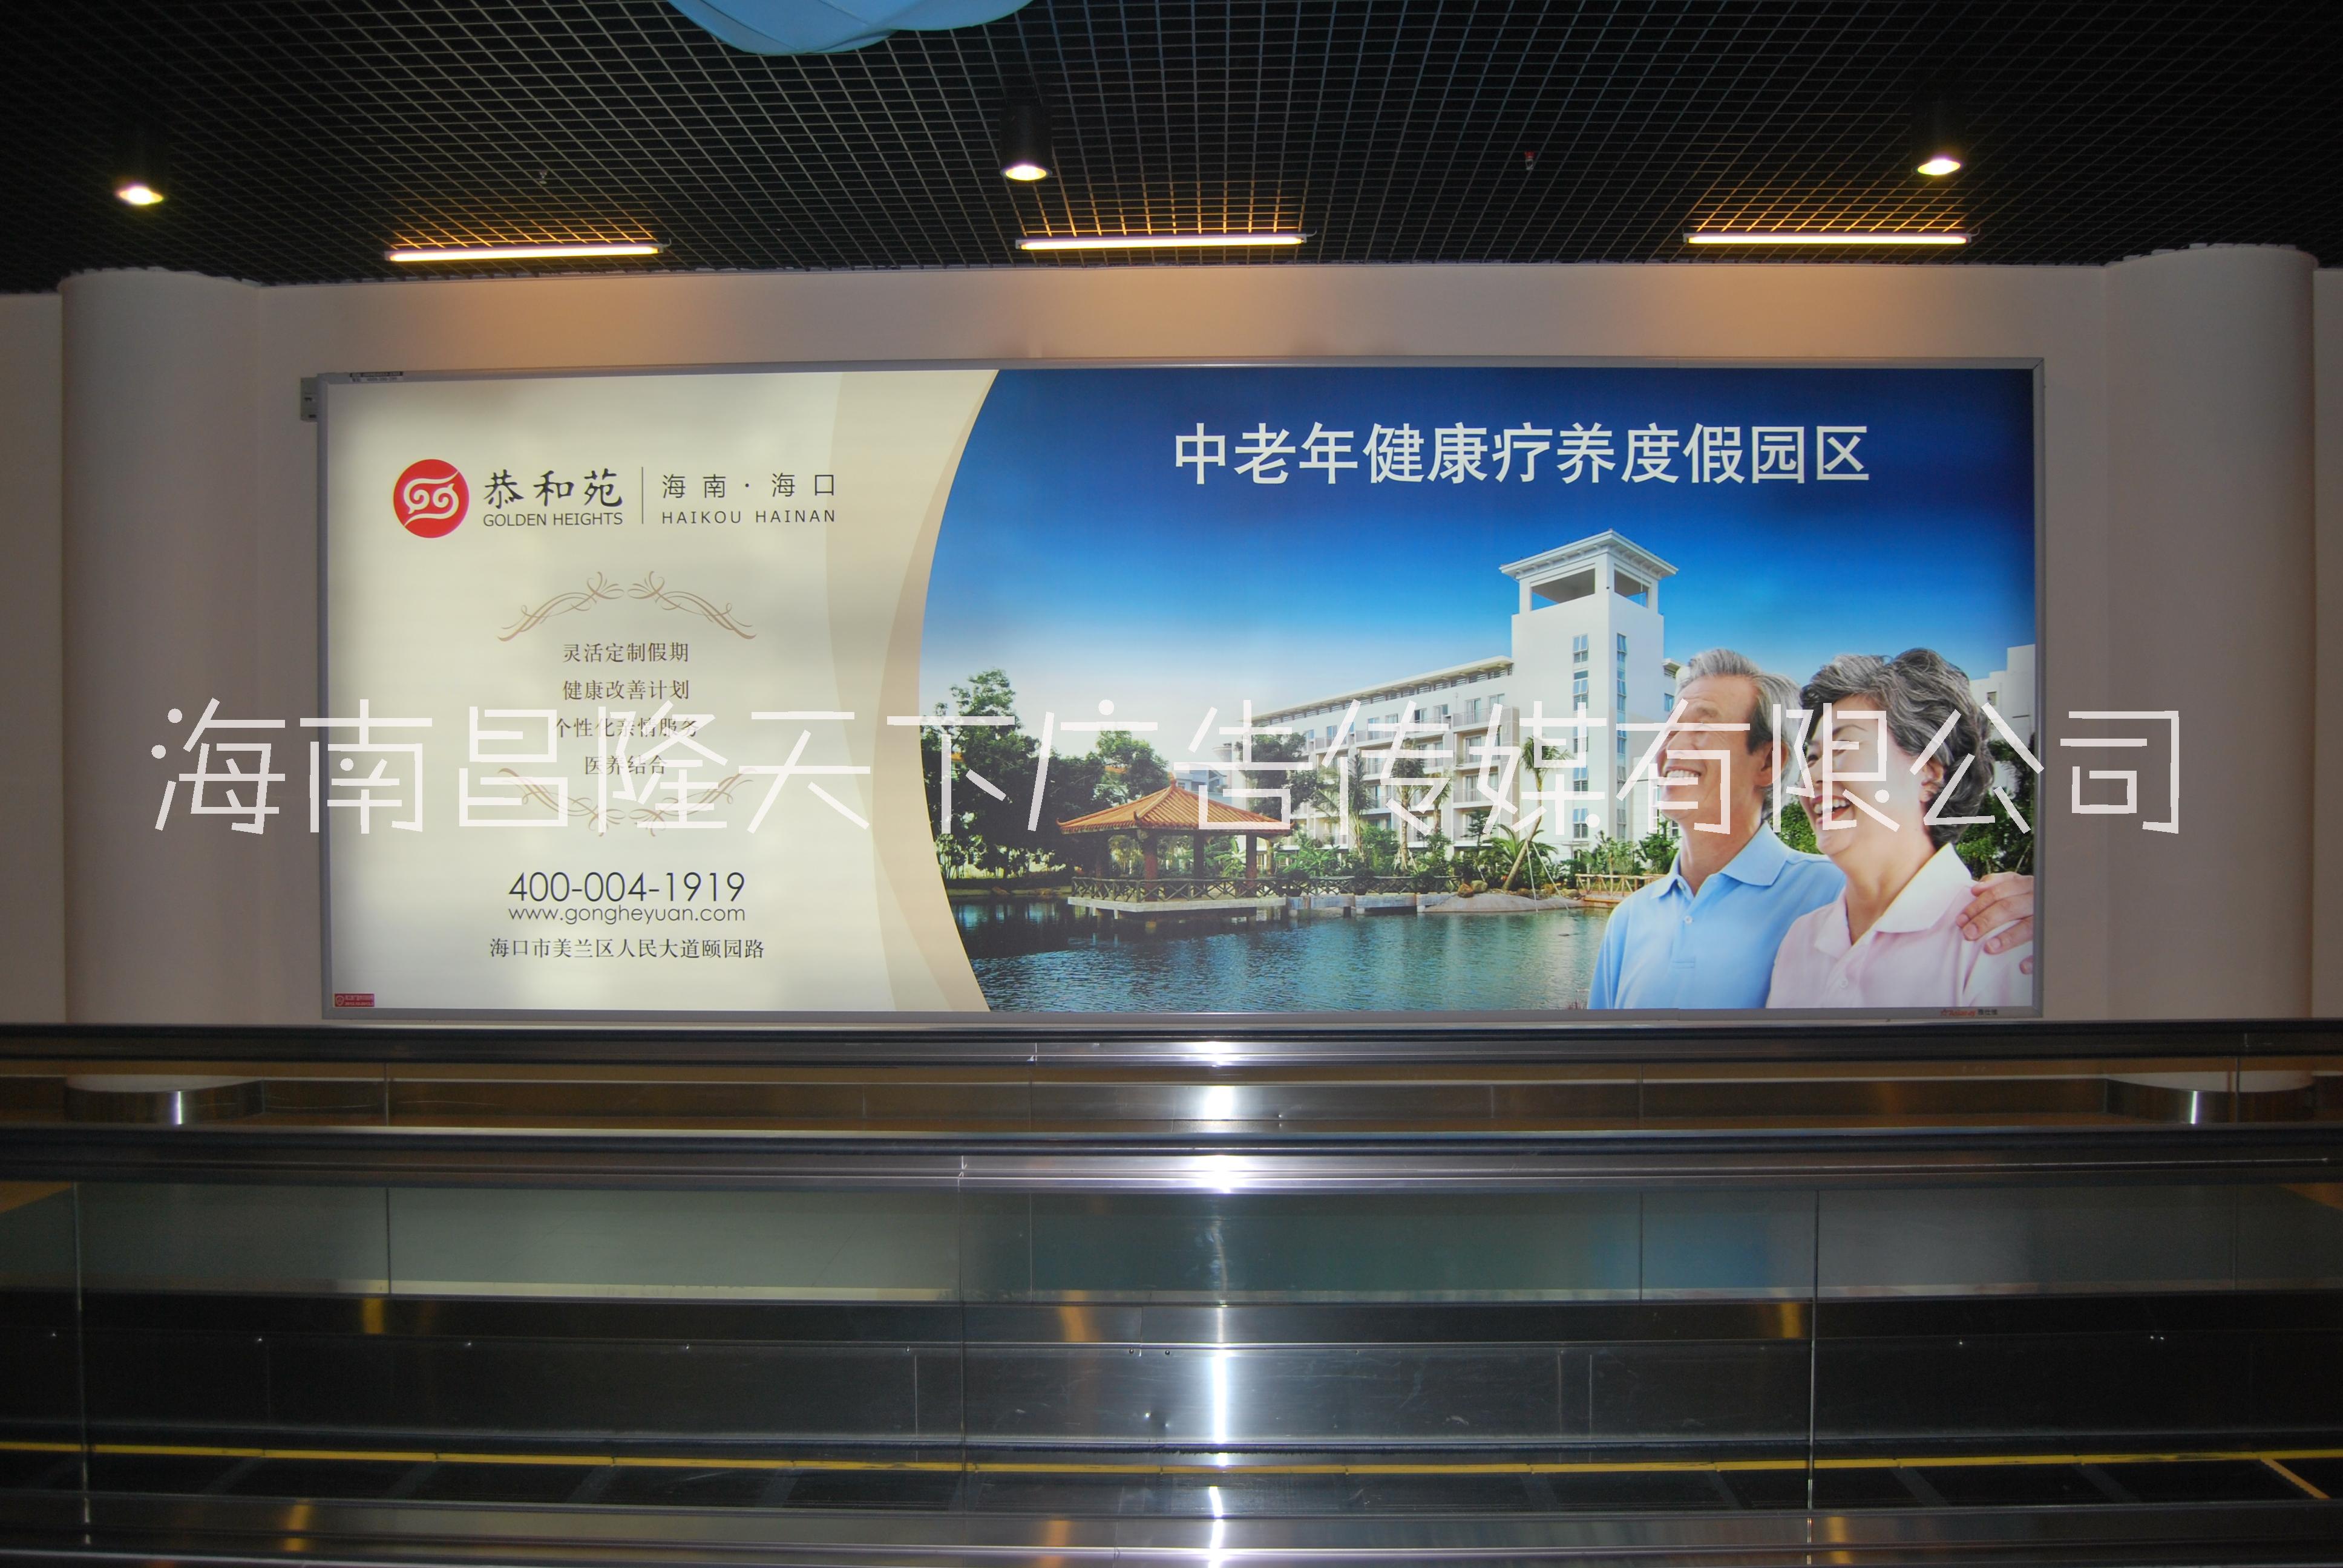 海南几大机场灯箱广告牌媒体 海南海口三亚博鳌机场灯箱和LED